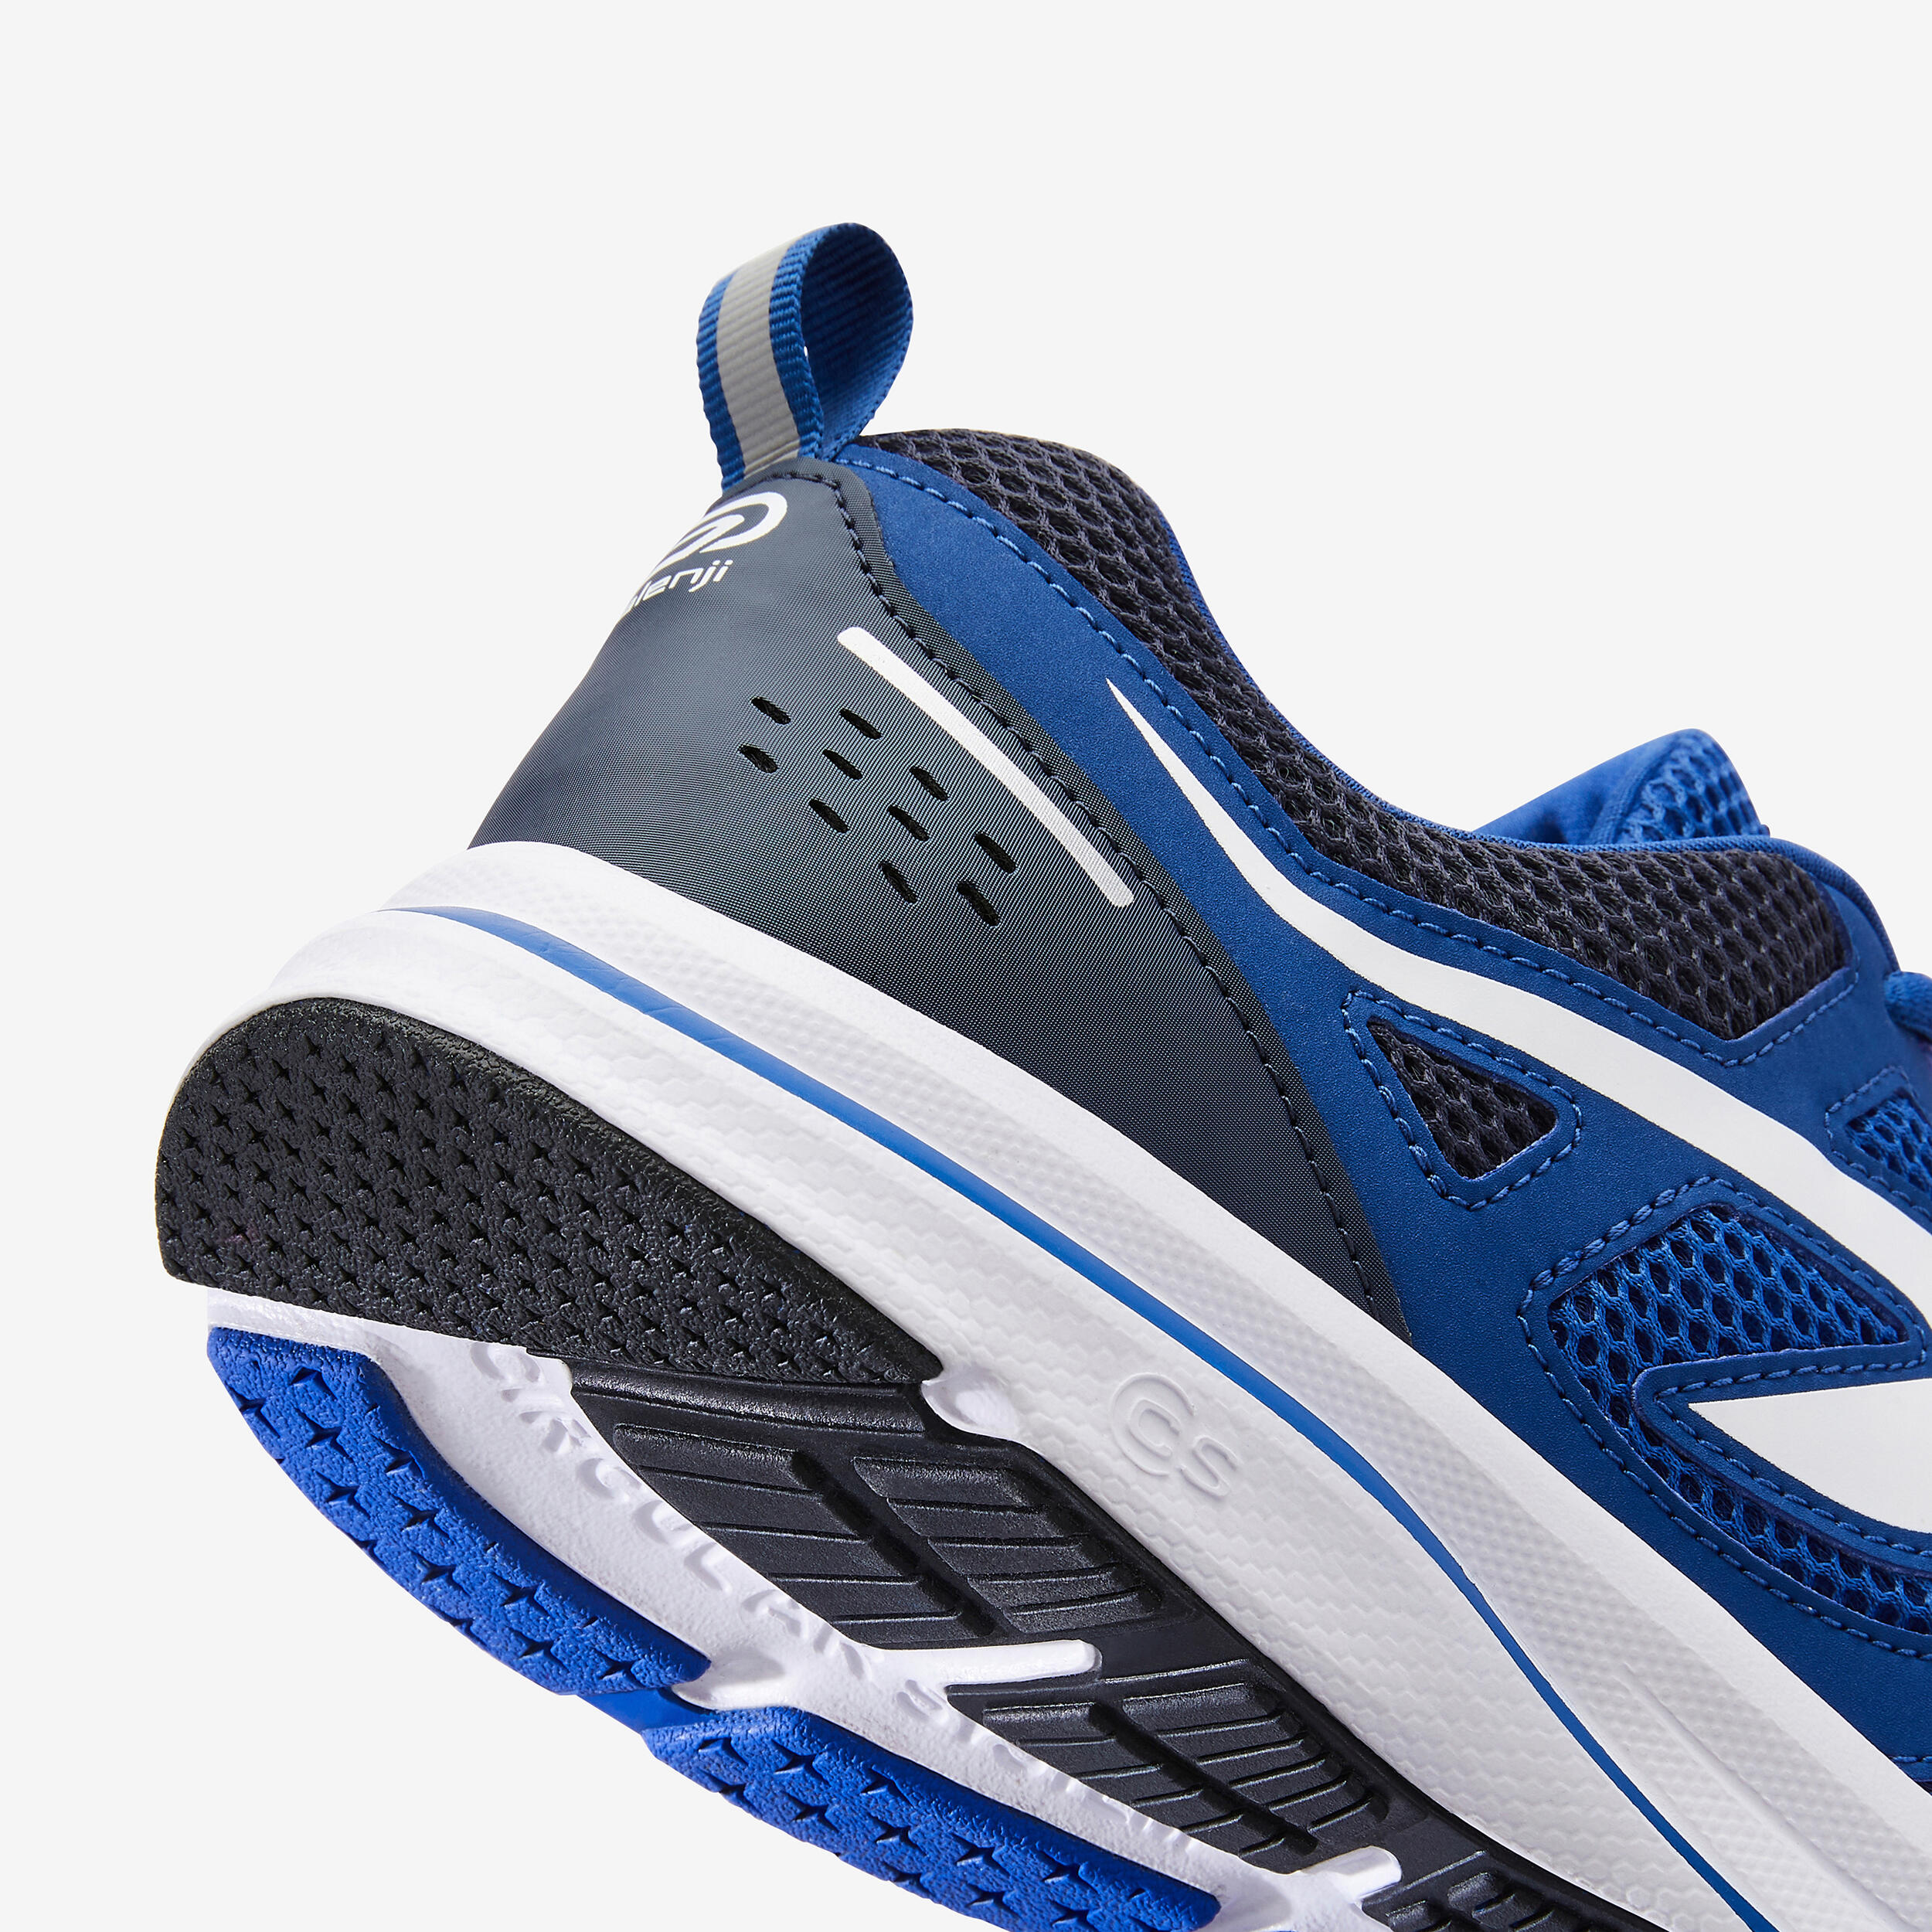 SEGA Red-Marathon Running Shoes For Men